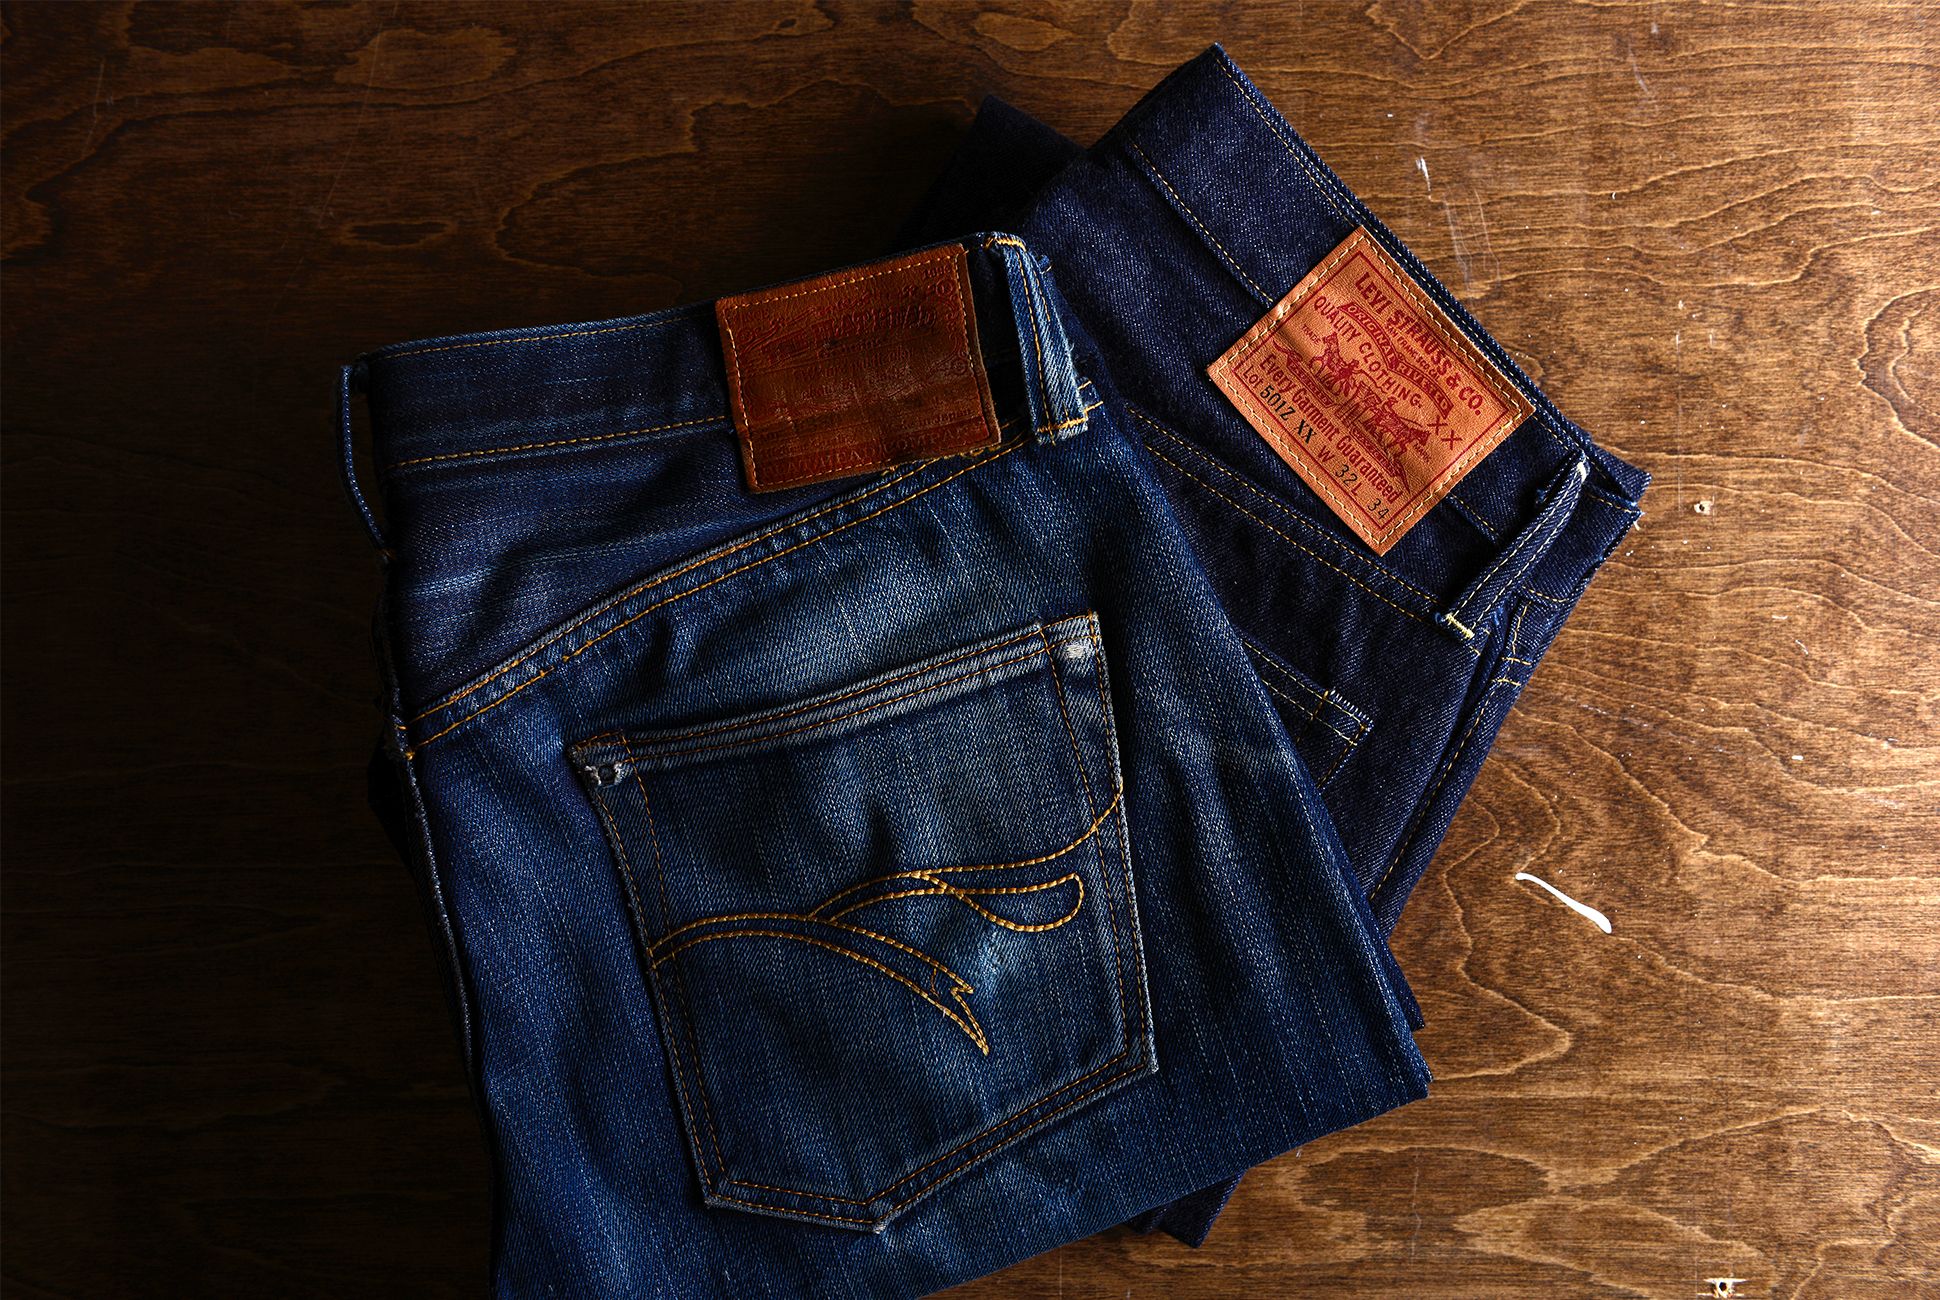 quality denim jeans